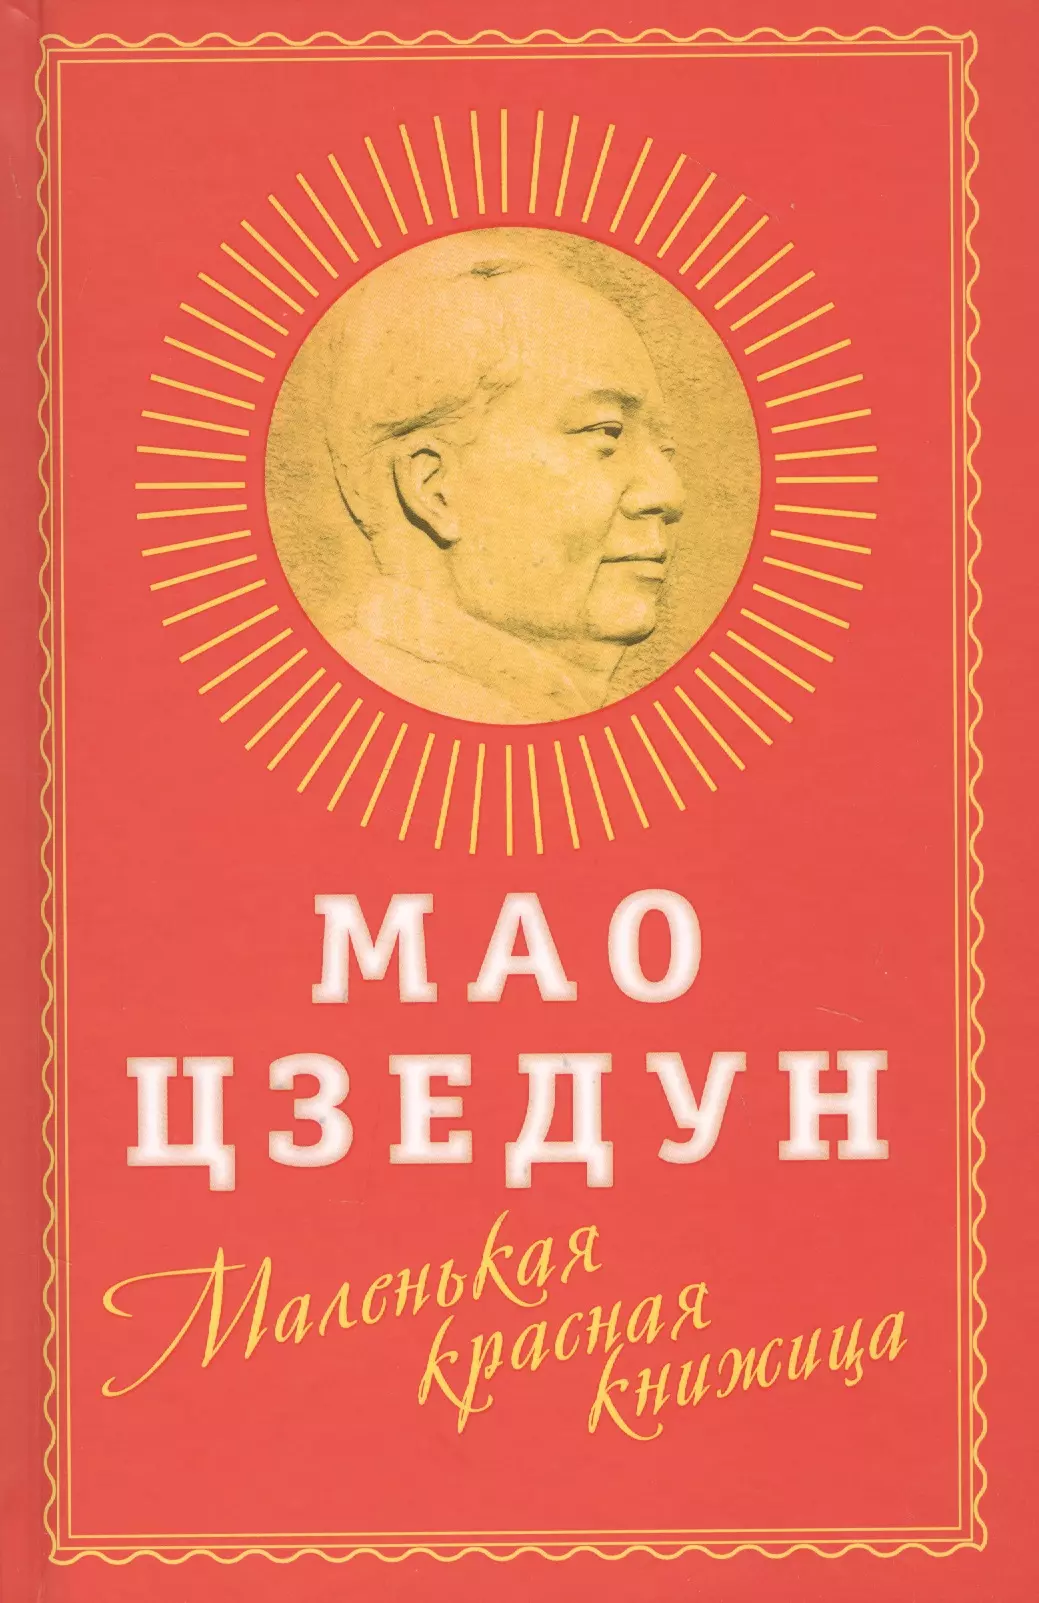 Мао Цзэдун Маленькая красная книжица джон кей китай от конфуция до мао цзэдуна